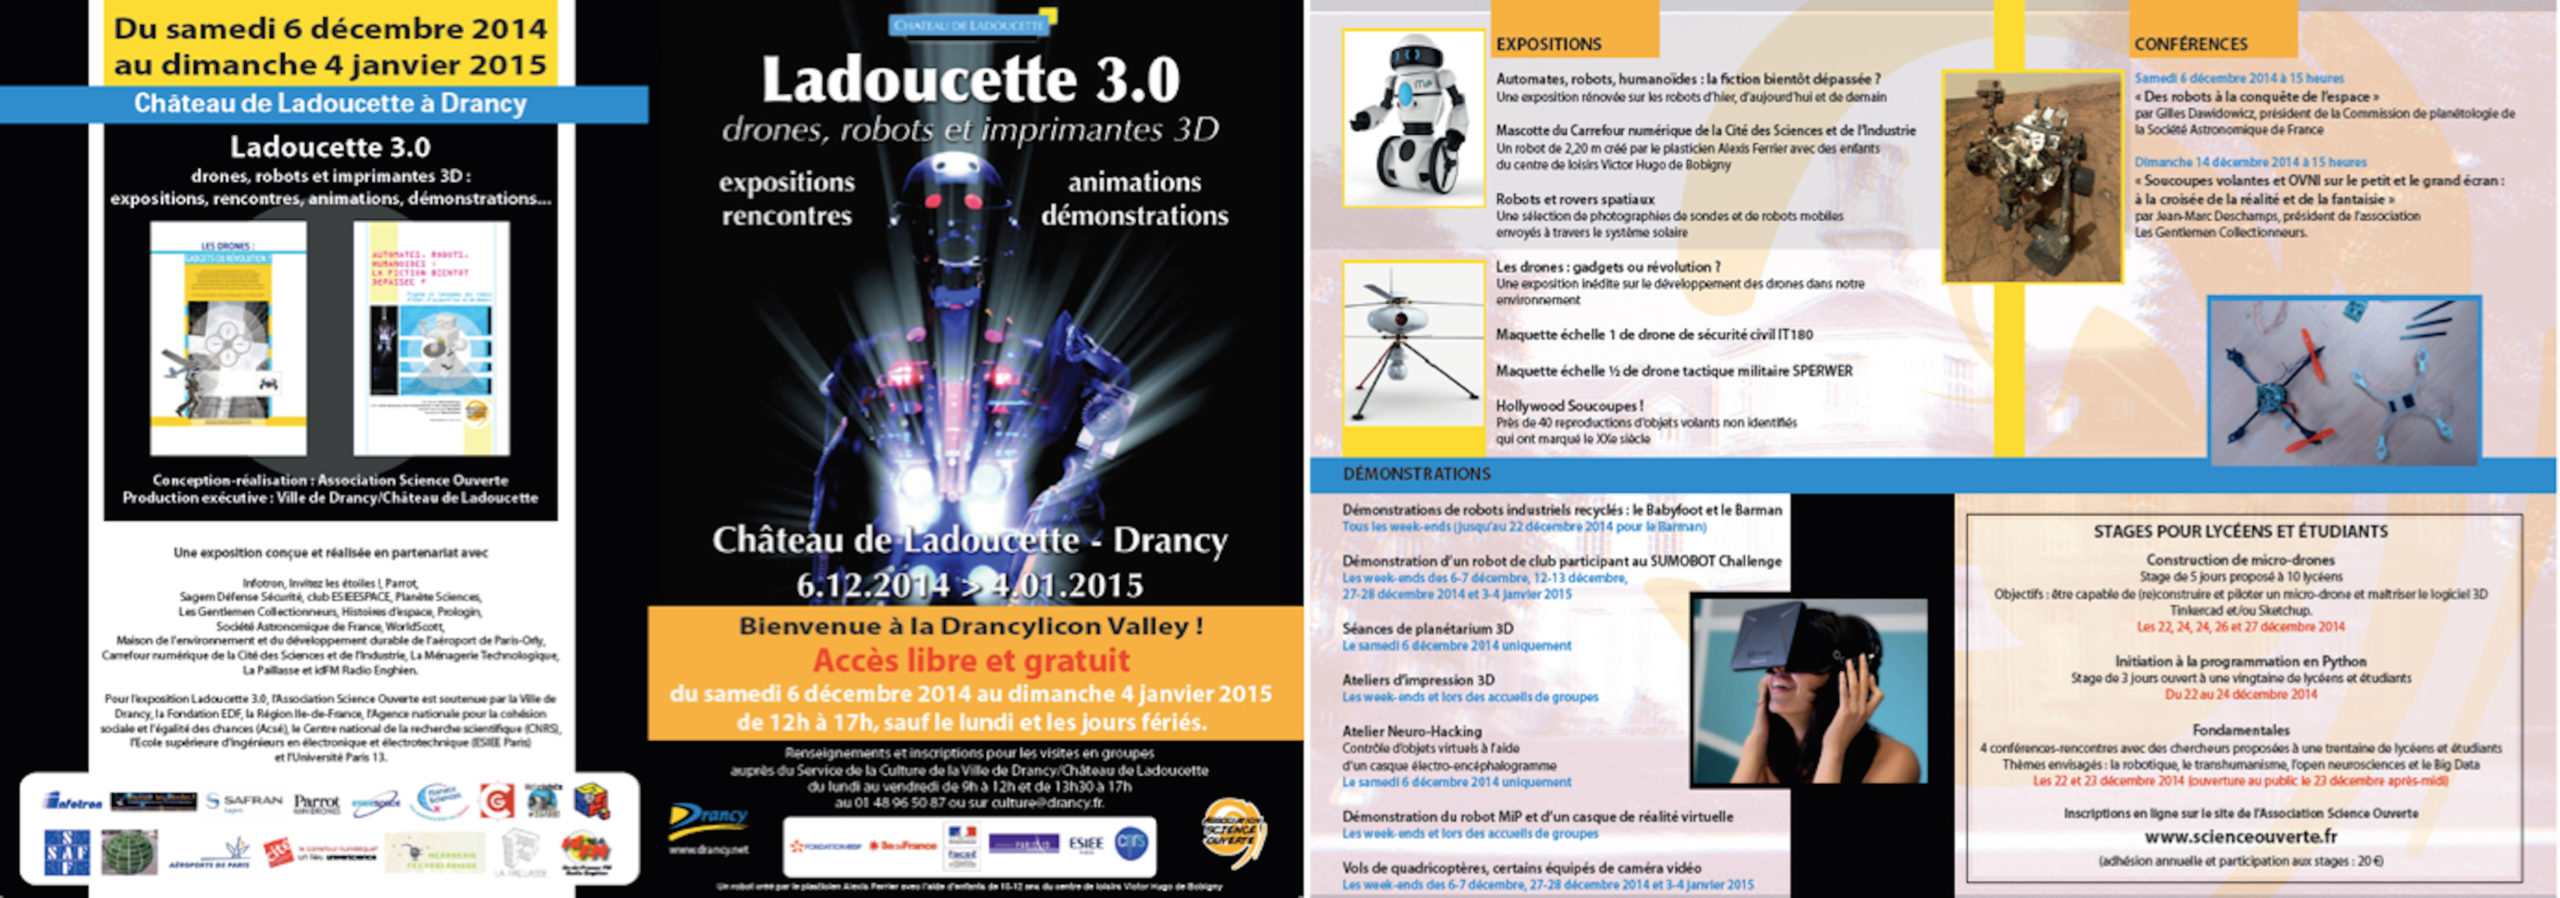 Programme Ladoucette 3.0